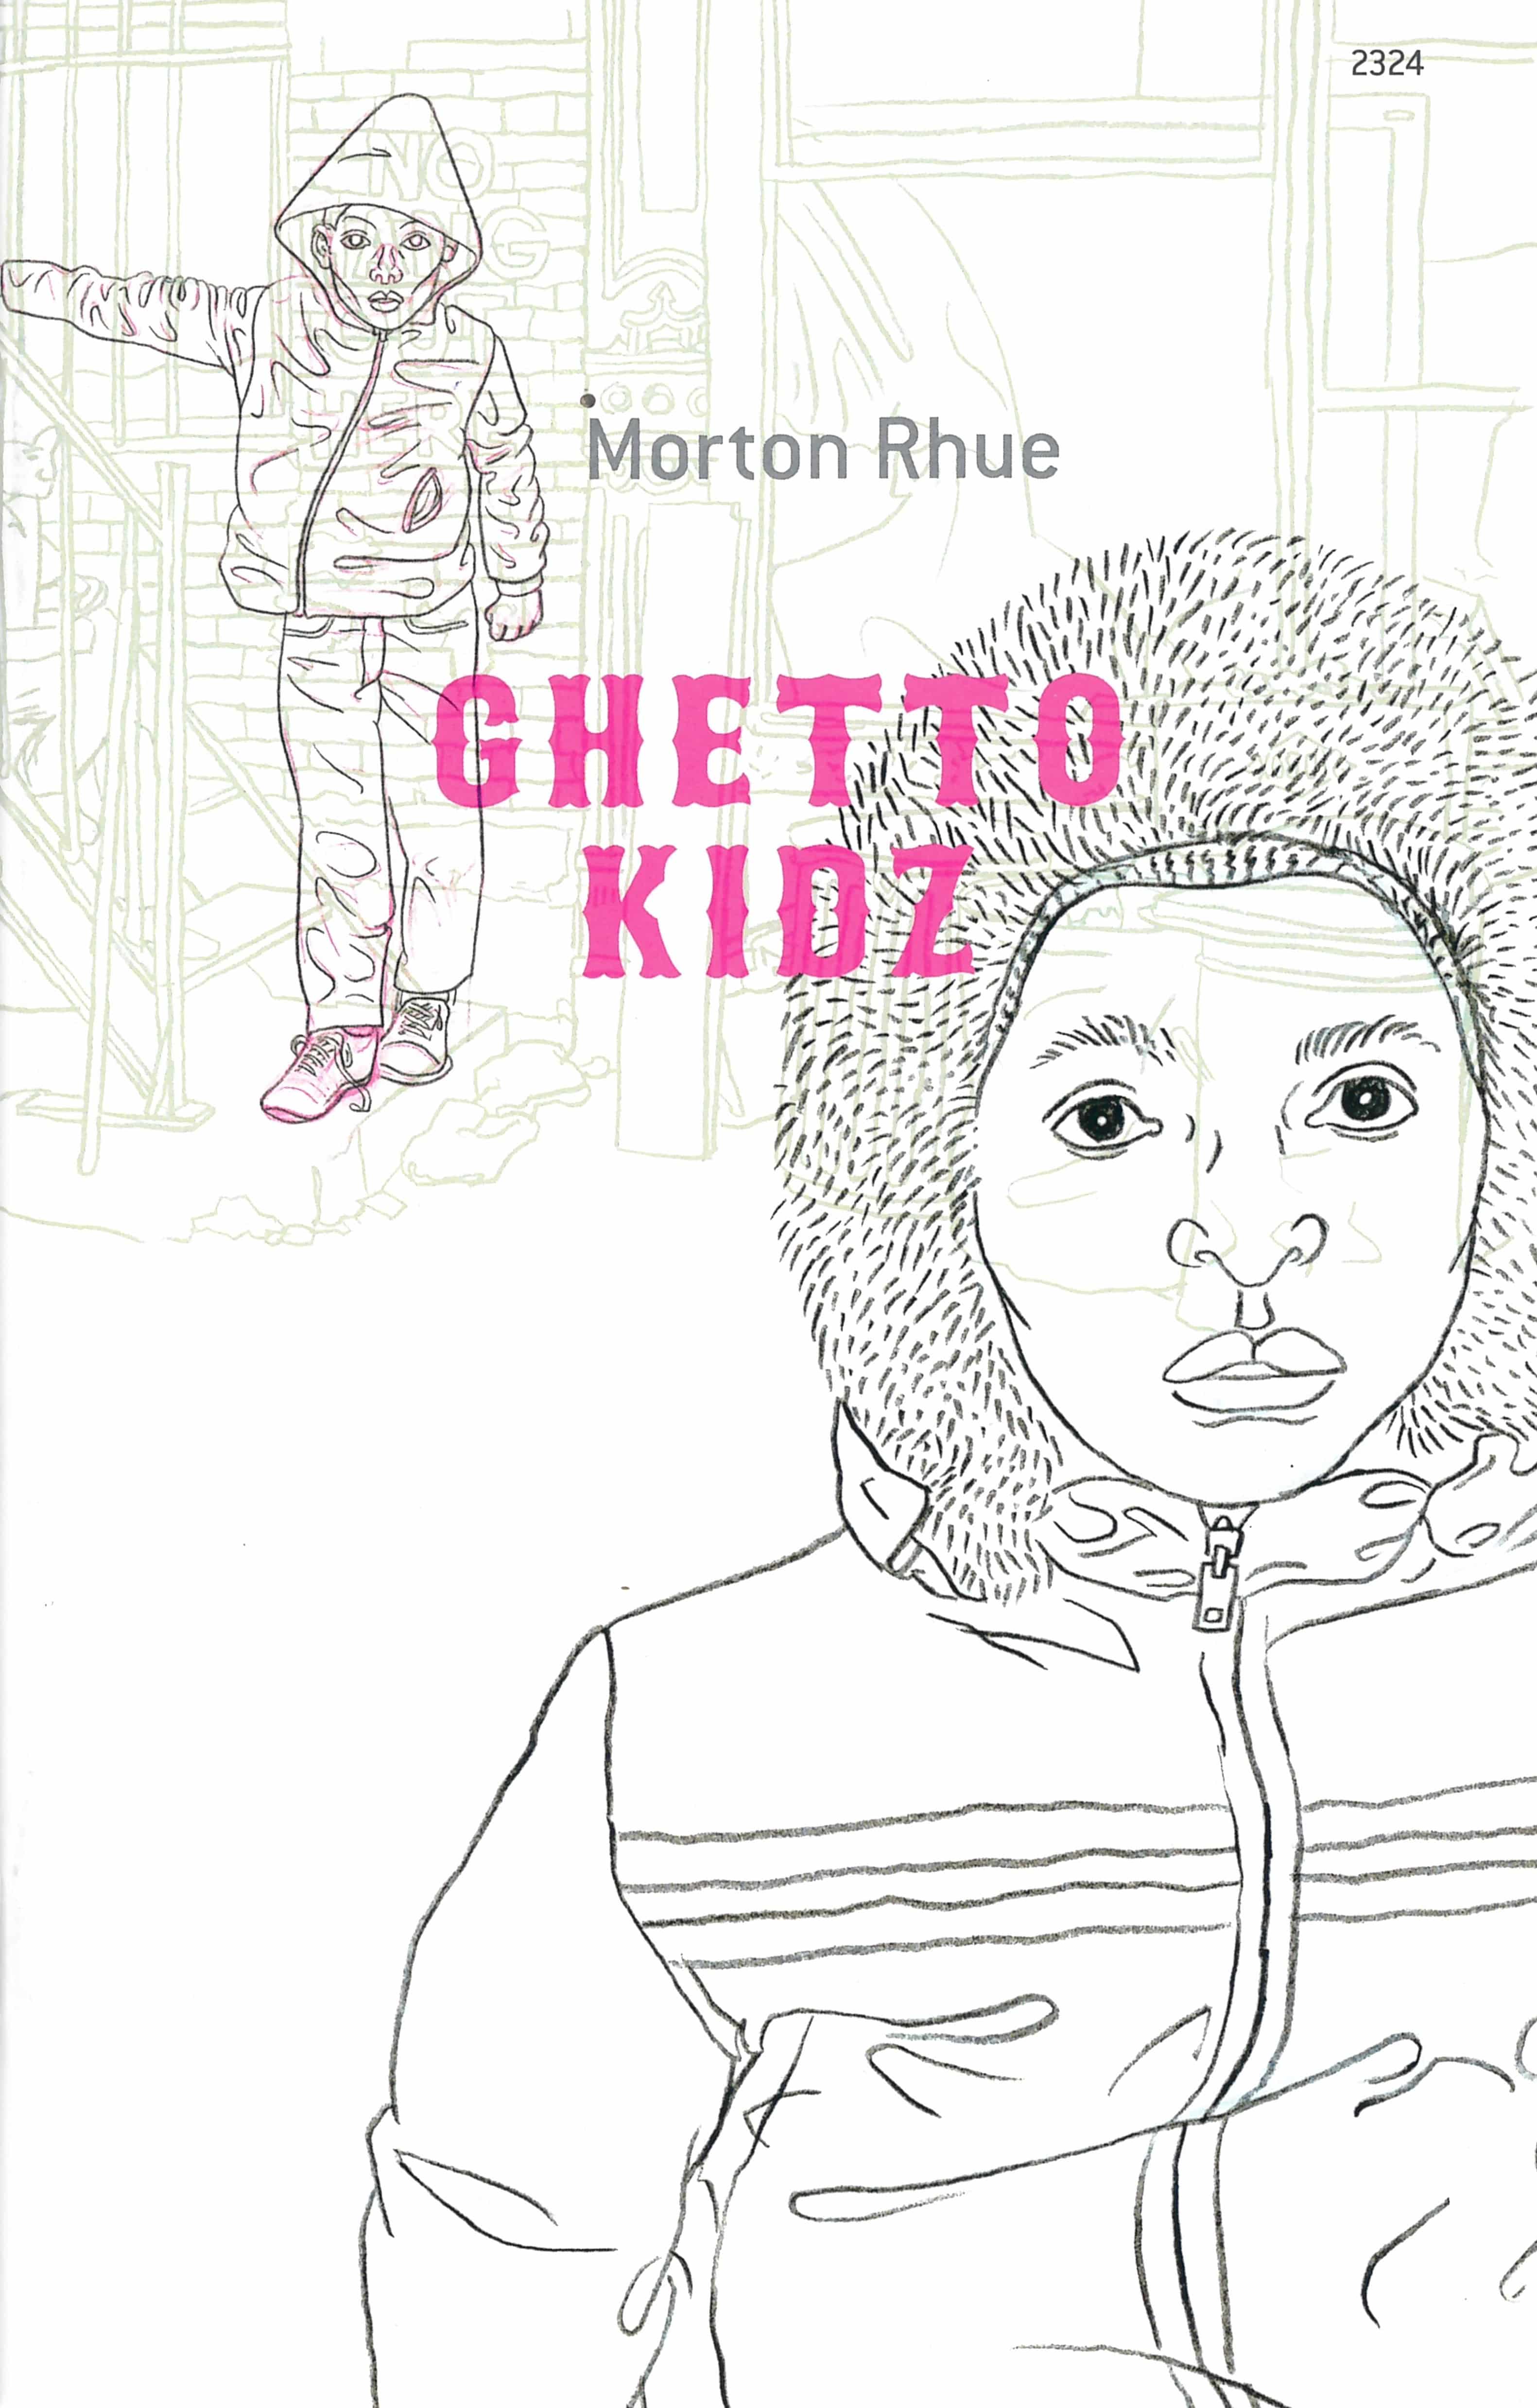 Ghetto Kidz, ein Jugendbuch von Morton Rhue, Illustration von Andreas Gefe, SJW Verlag, Krimi